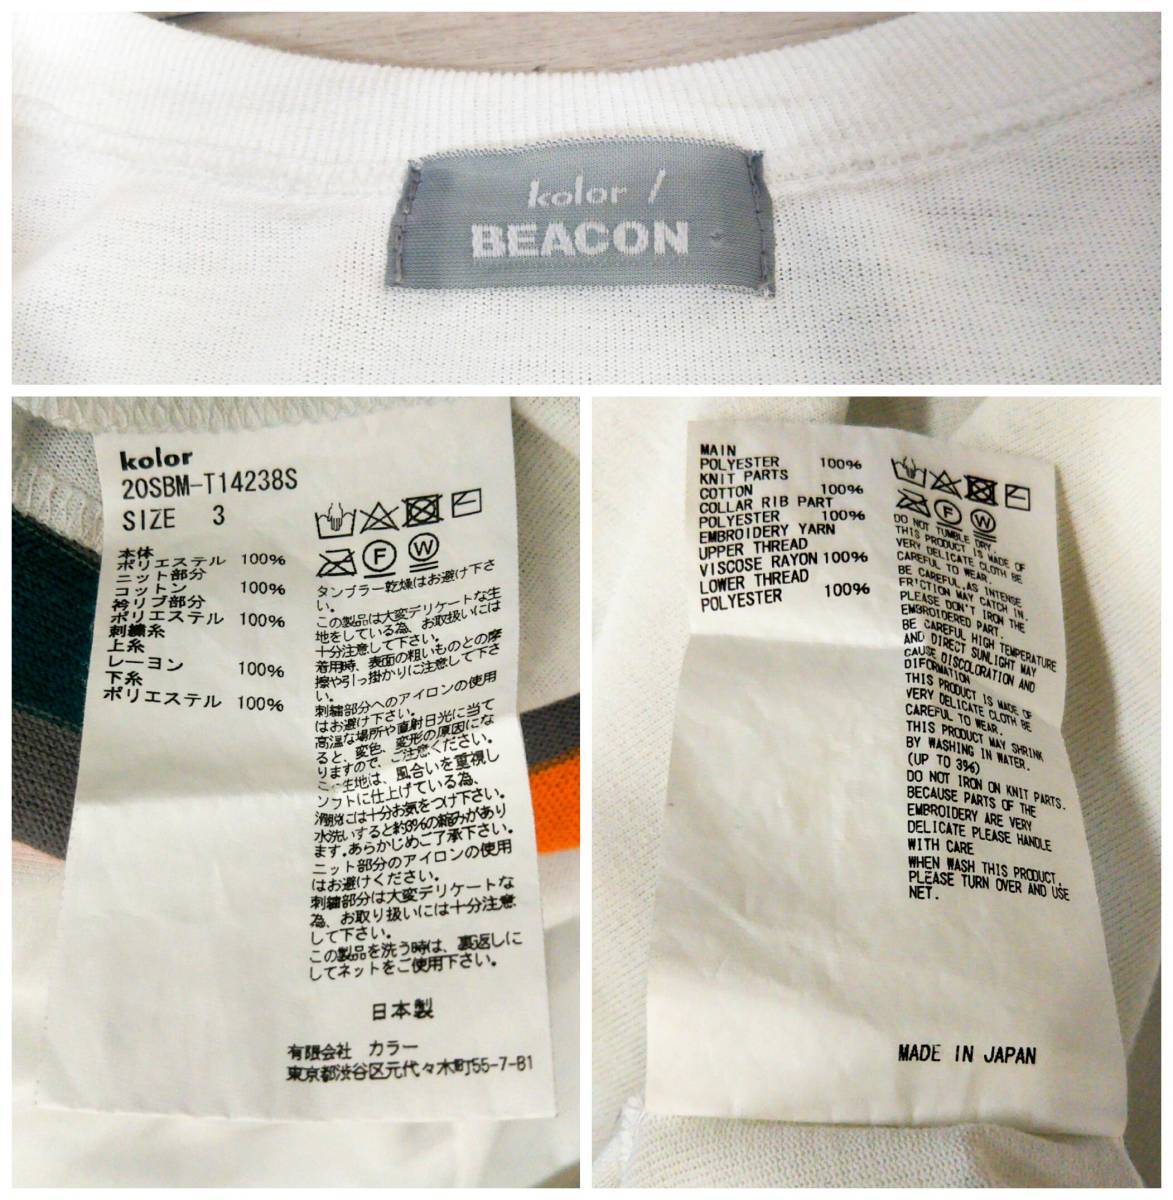 kolor / BEACON カラー ビーコン ホワイト×ボーダーニット切替 カットソー 半袖Tシャツ [20SBM-T14238S] ドッキング 日本製 メンズ [3]_画像7